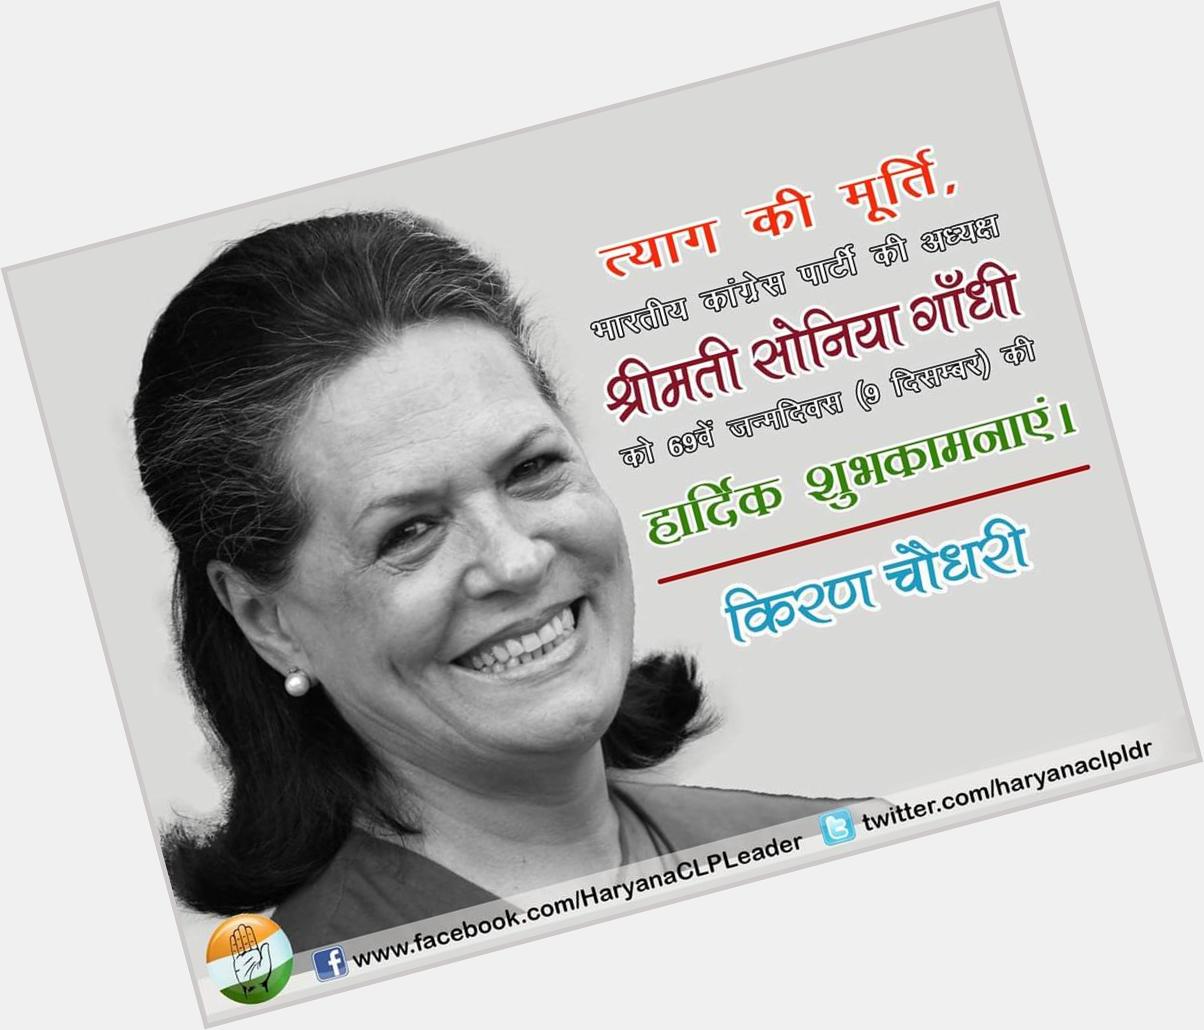 Happy Birthday Smt. Sonia Gandhi@ 